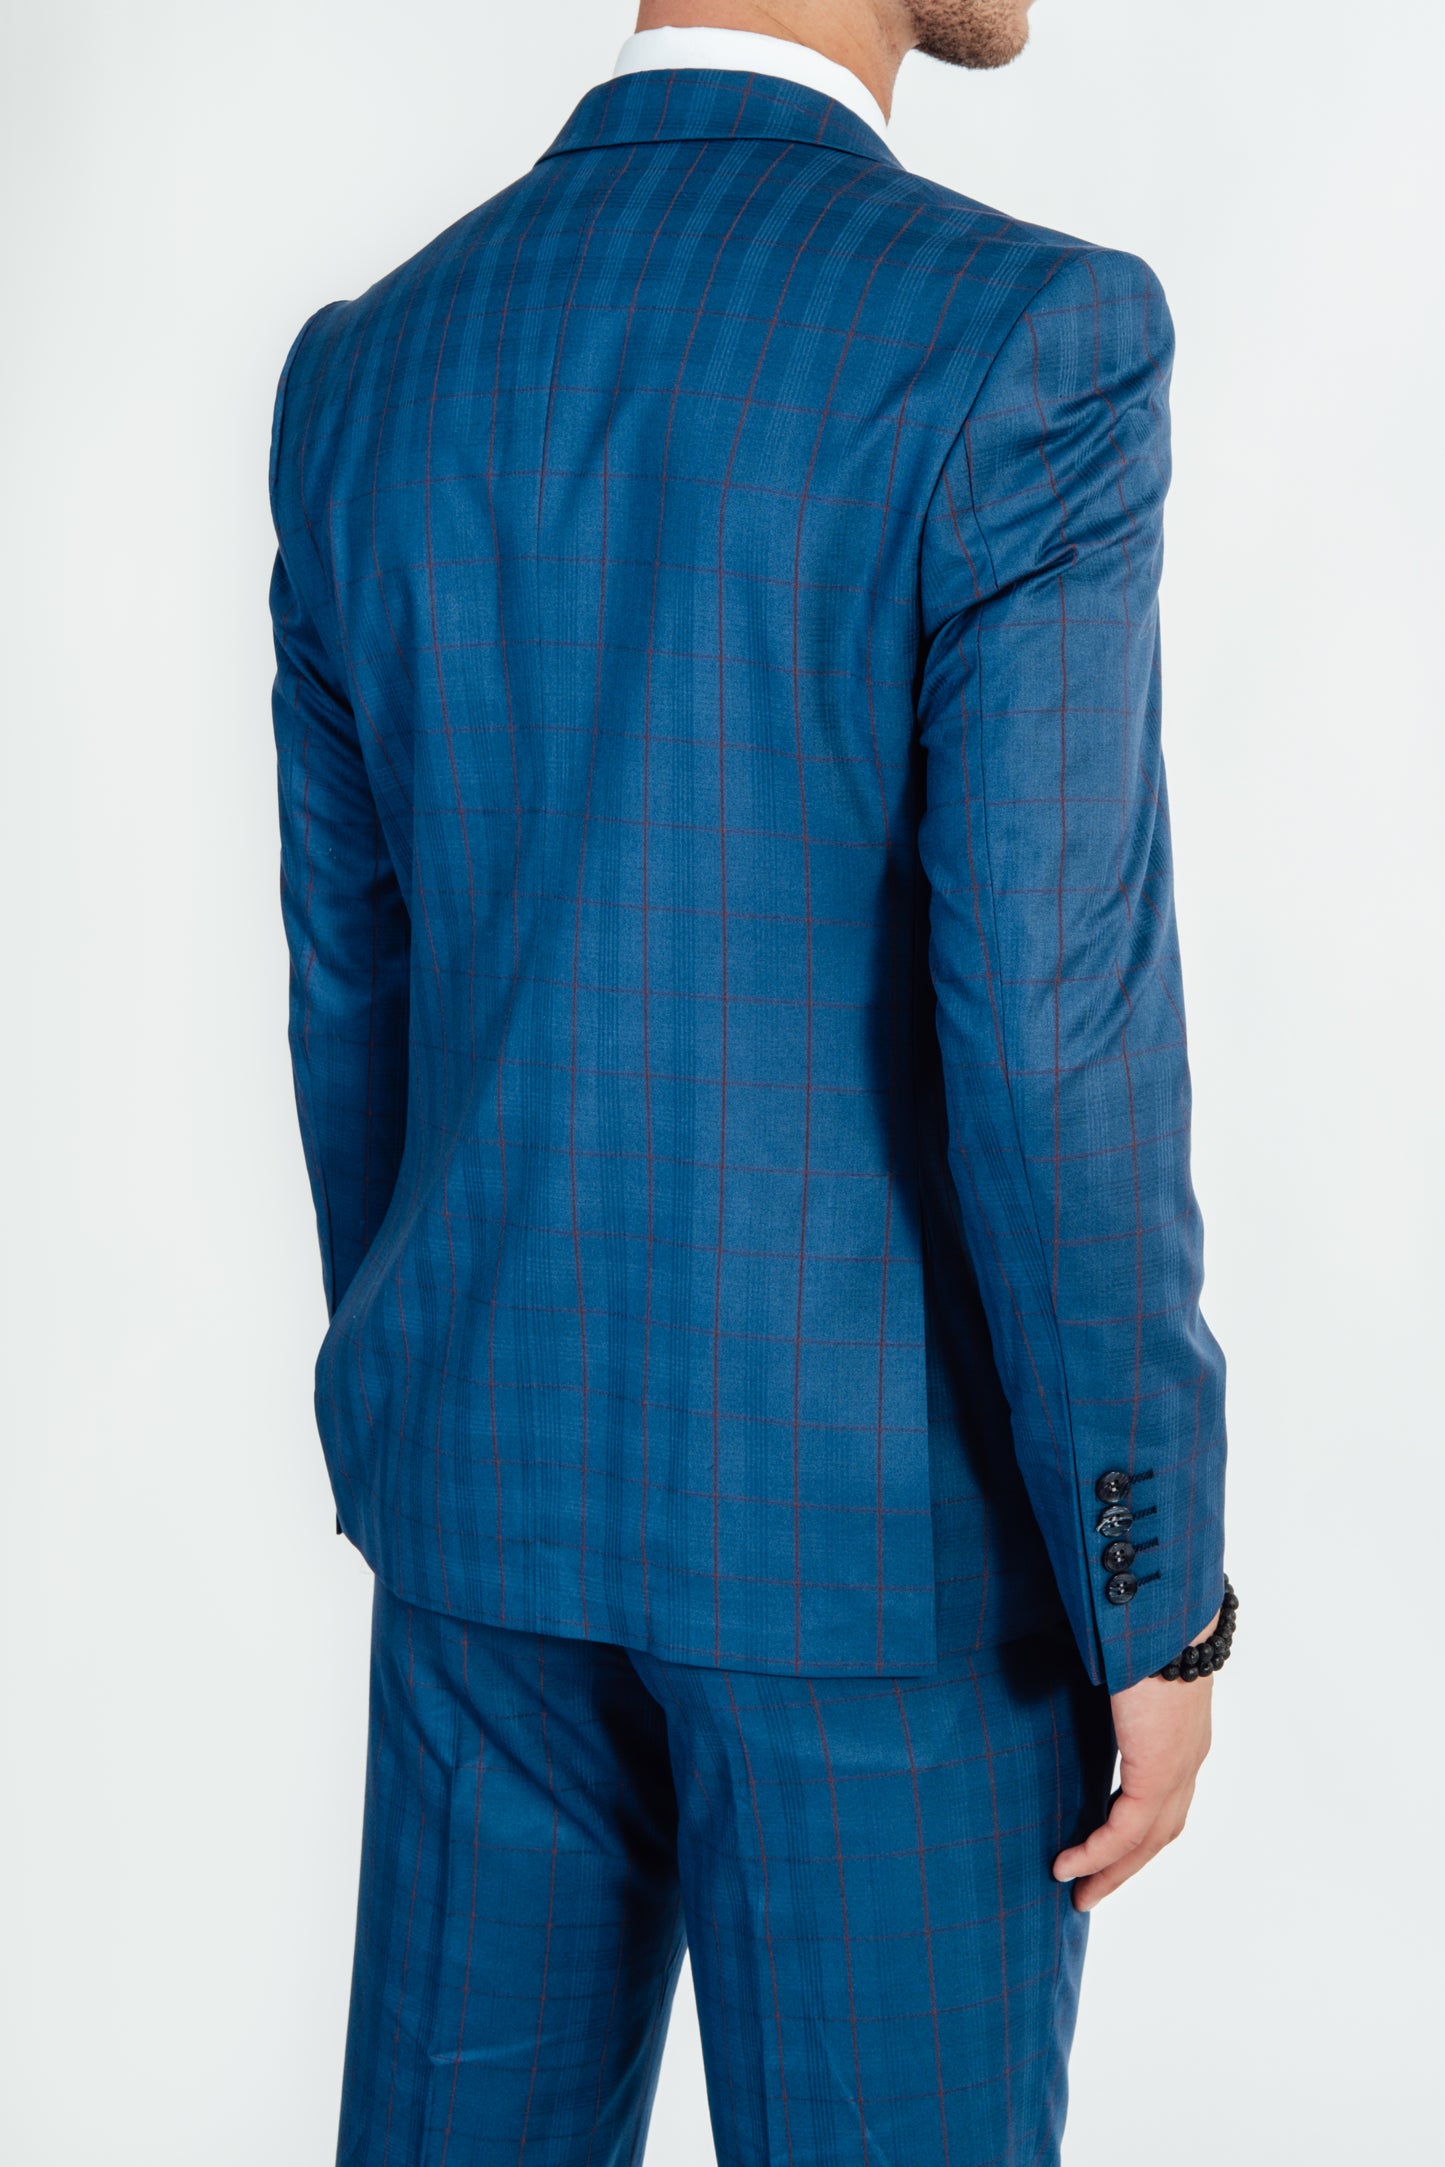 Achterkant van blauw kostuumvest met ruit van Suitify gedragen door een man